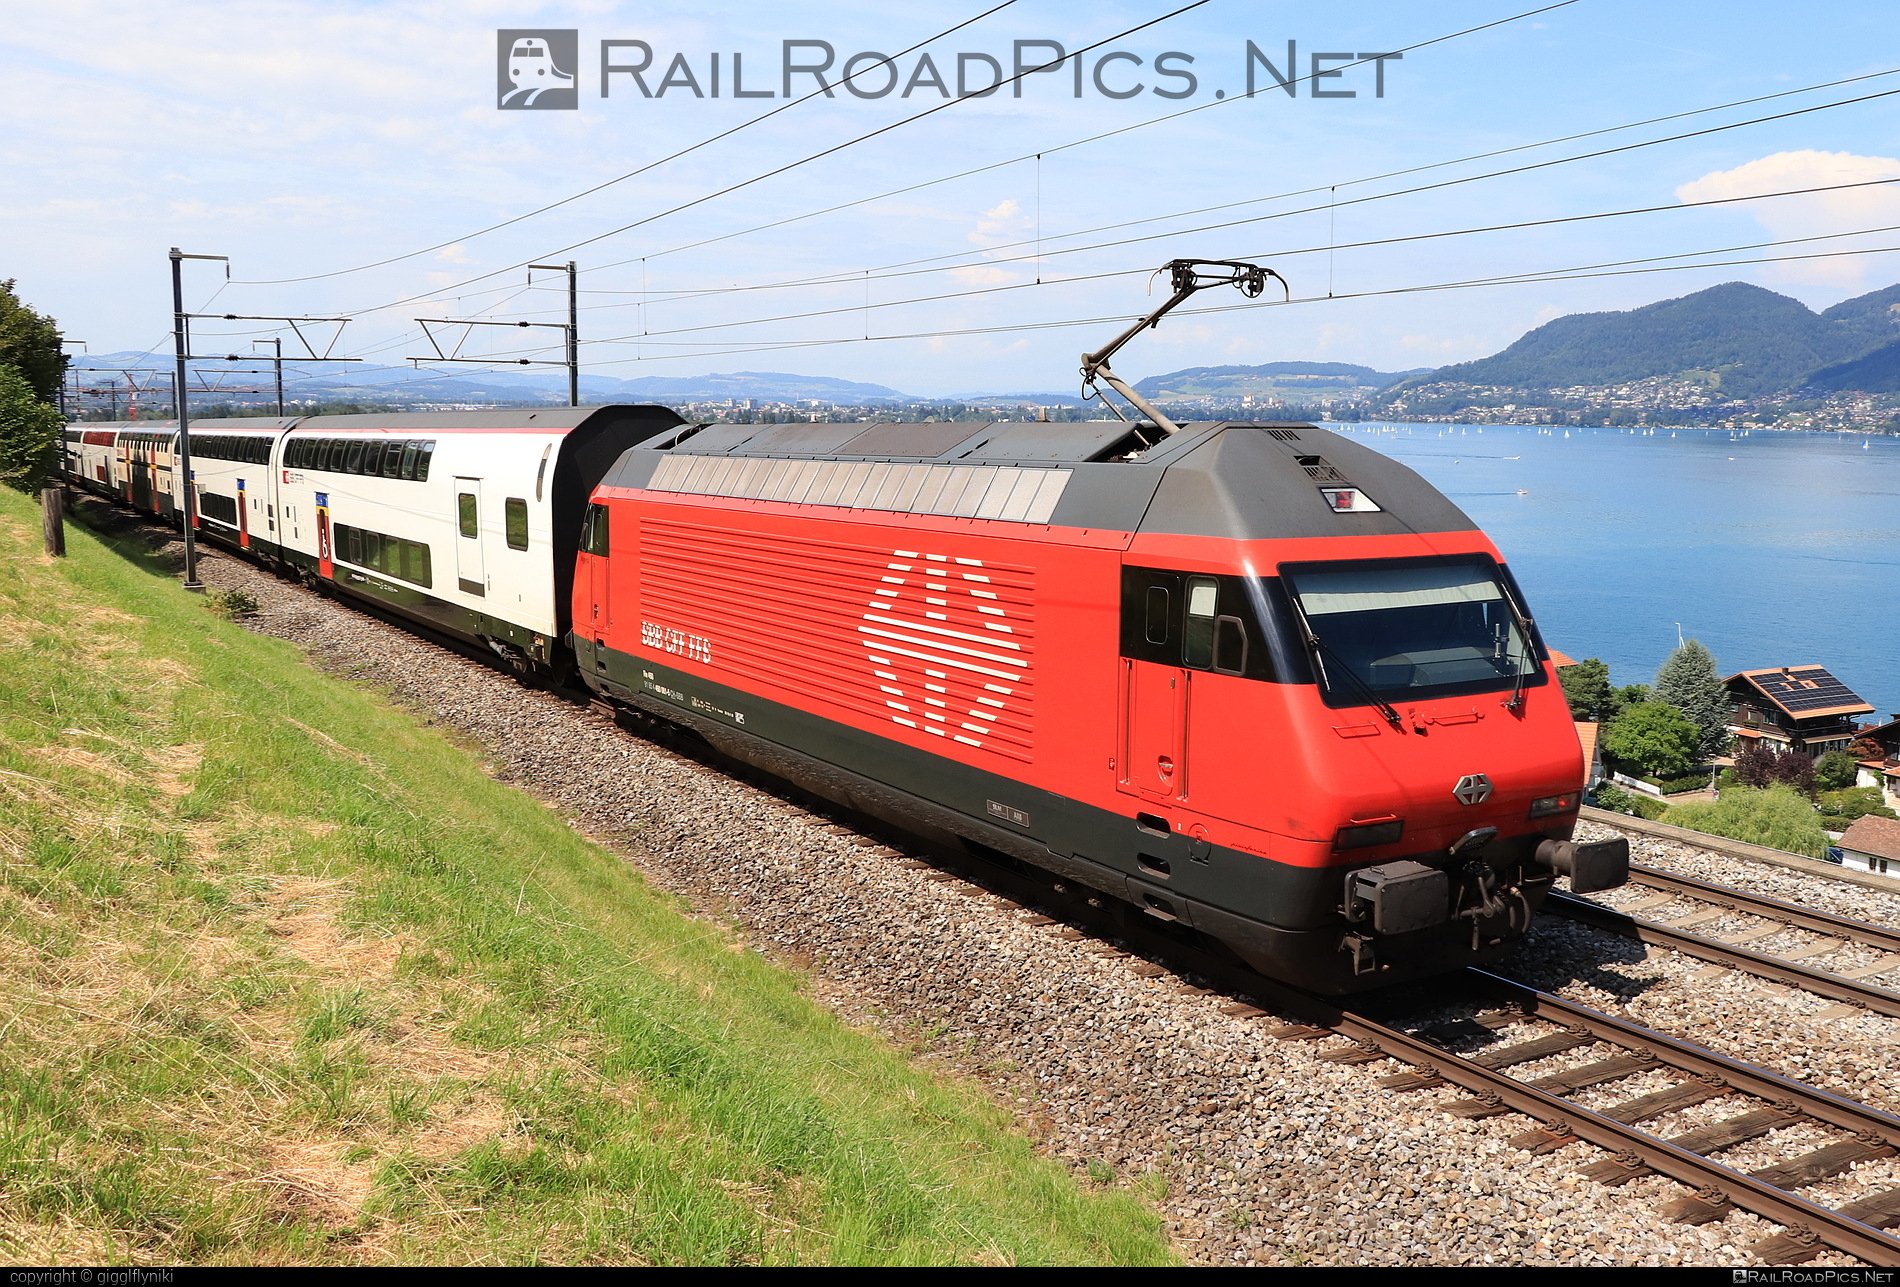 SBB Class Re 460 - 460 061 operated by Schweizerische Bundesbahnen SBB #CFF #CheminsDeFerFederauxSuisses #FFS #FerrovieFederaliSvizzere #SBB #SchweizerischeBundesbahnen #lok2000 #sbbClassRe460 #sbbRe460